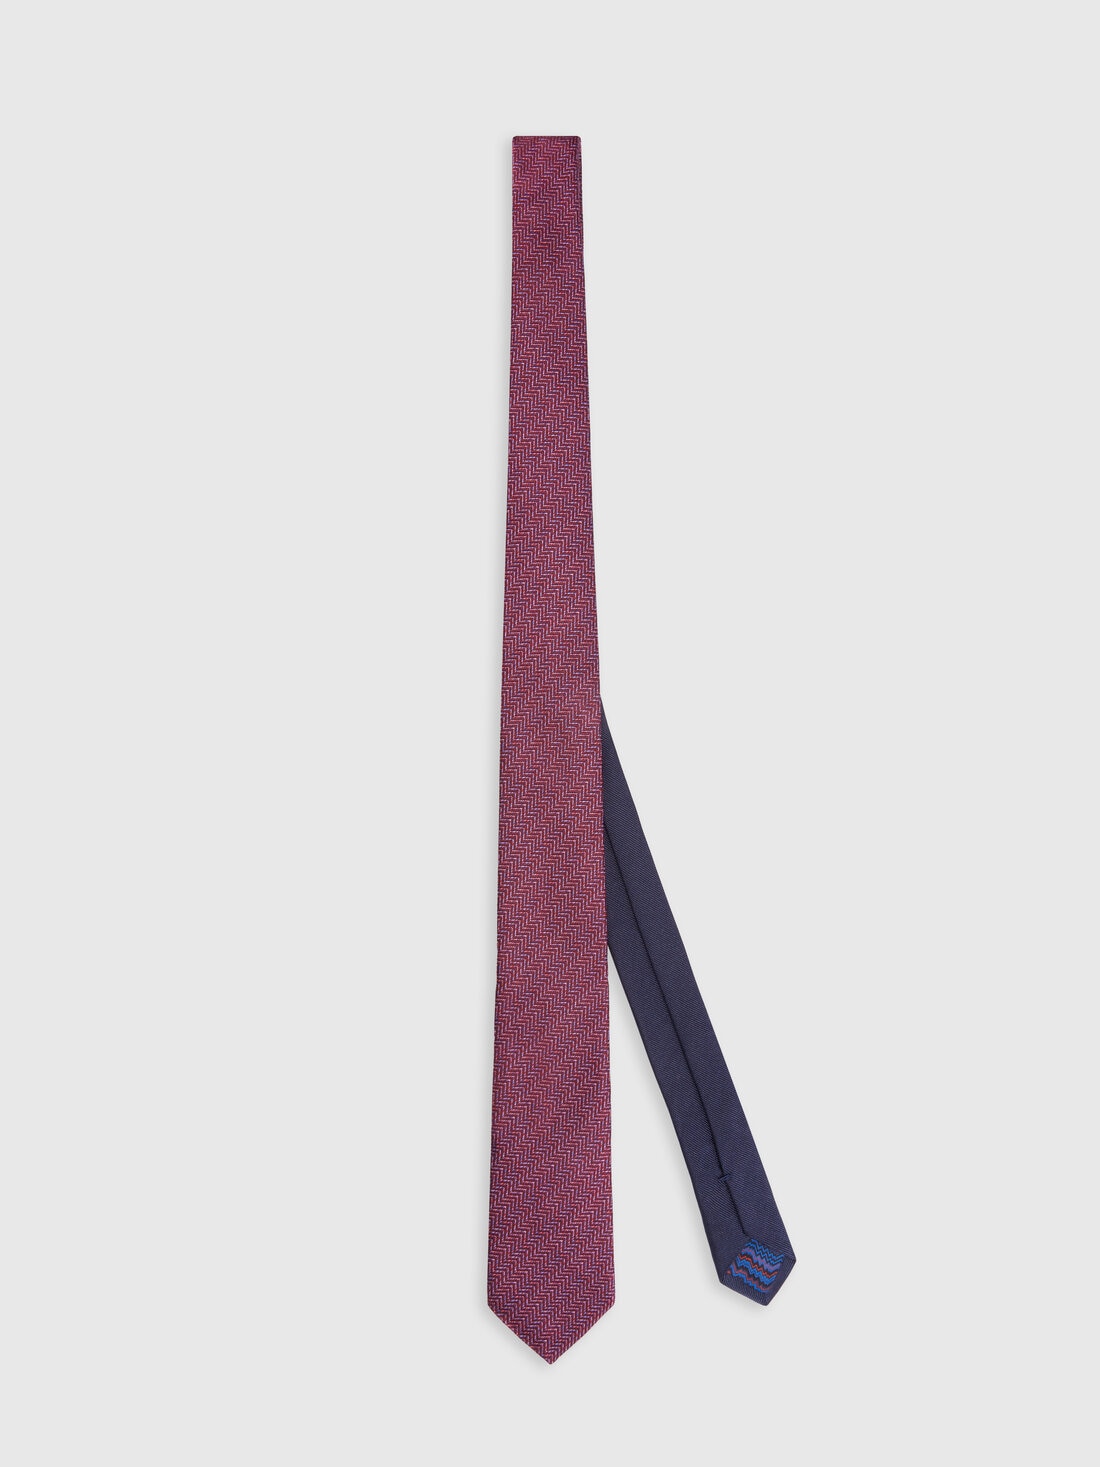 Corbata de seda con estampado de espigas, Multicolor  - 8053147141947 - 0